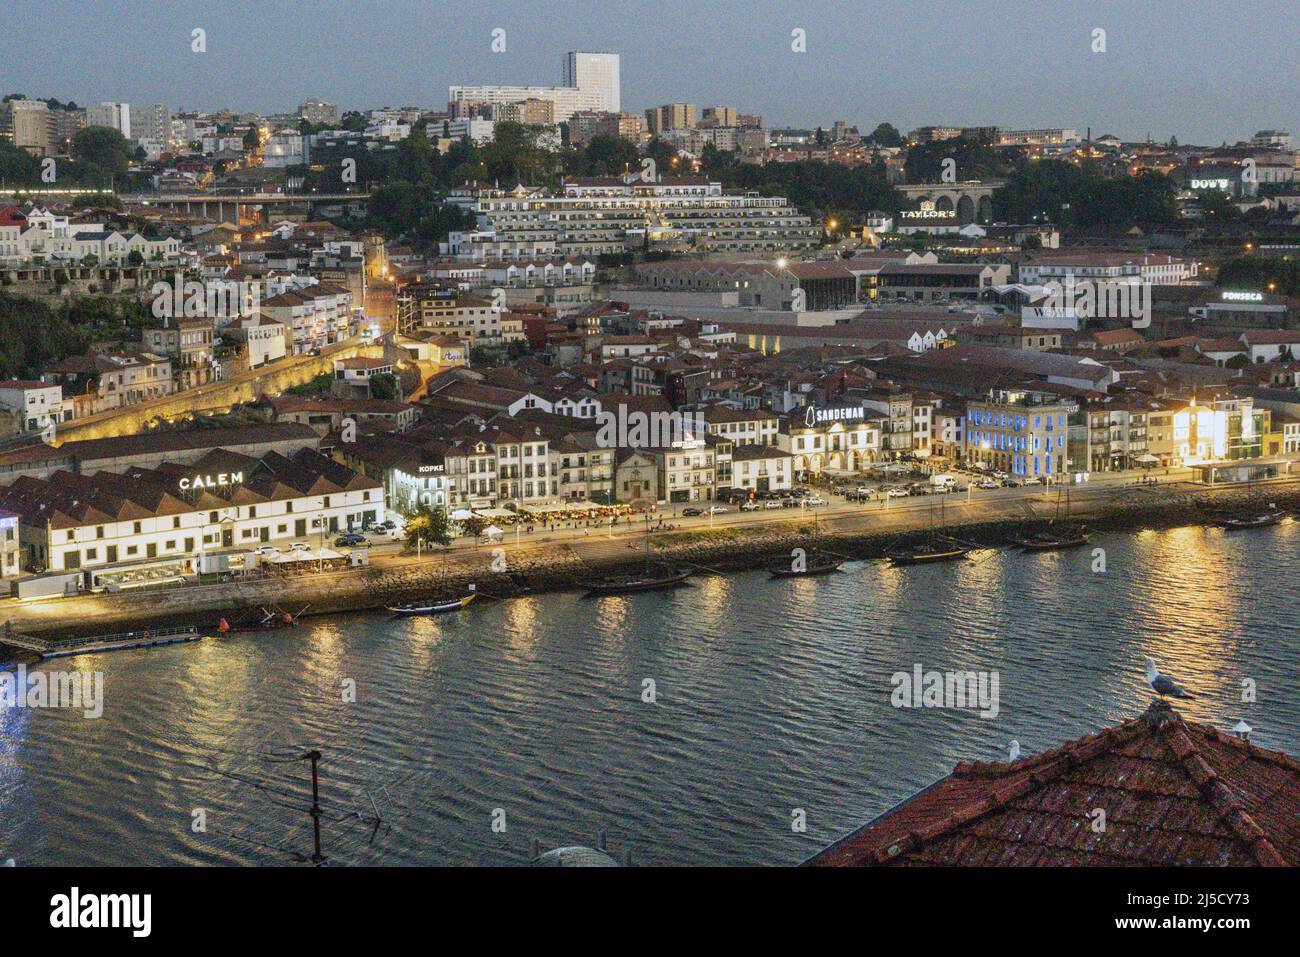 Portugal, Porto, 20.07.2020. The shore at Vila Nova de Gaia in Porto on 20.07.2020. All the Port wine cellars are located there. [automated translation] Stock Photo